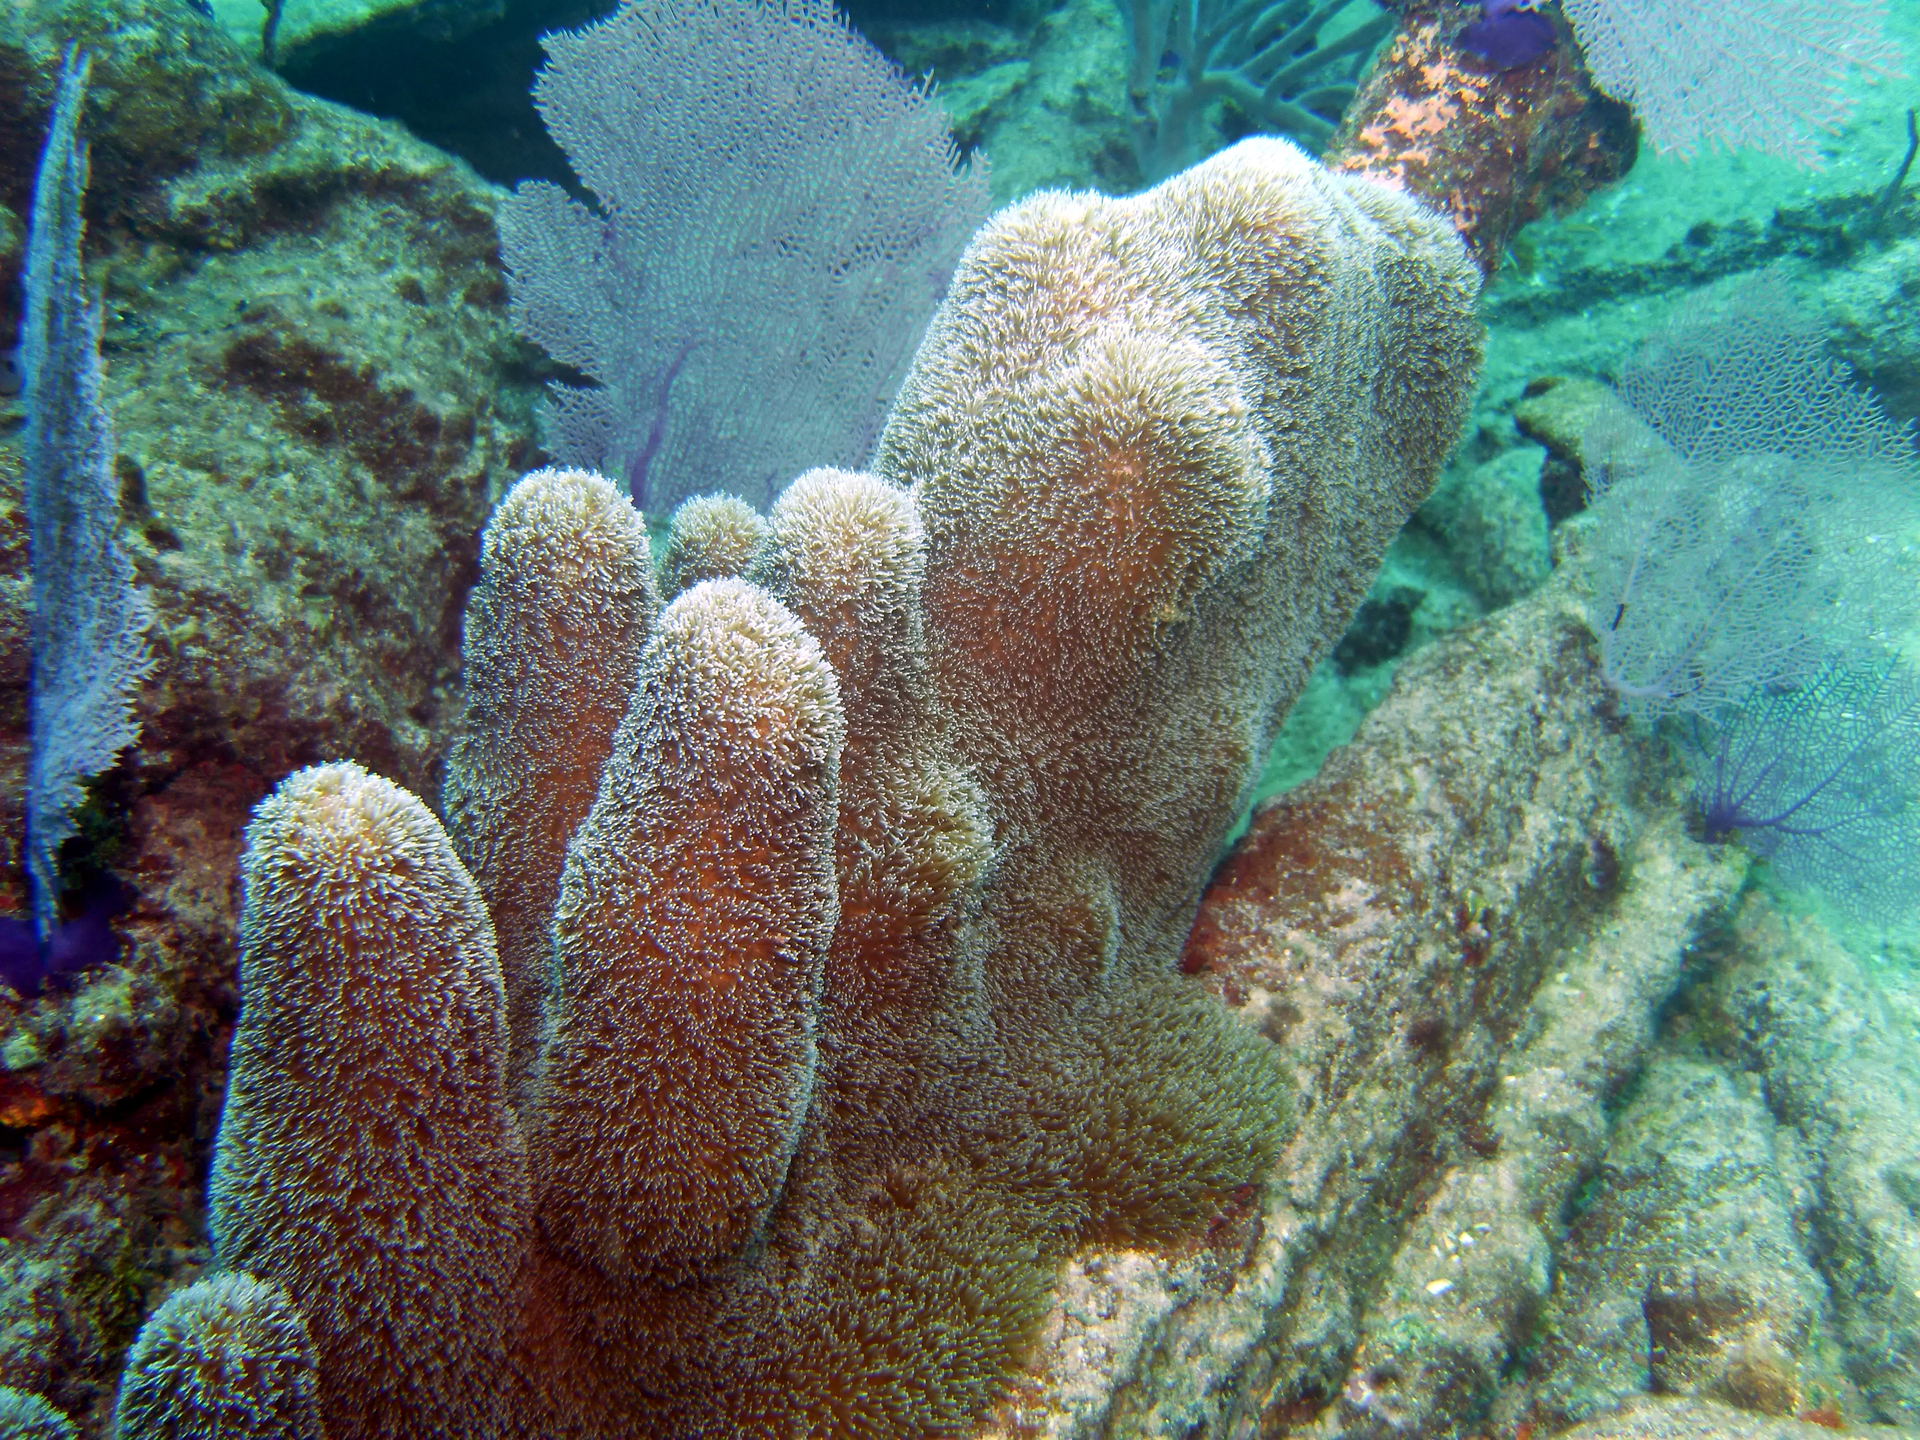 W galerii znajdują się fotografie przedstawiające bogactwo życia na rafie koralowej. Fotografia przedstawia duże zbliżenie korala madreporowego w kształcie różowych walców z wysuniętymi, białymi ramionami. Oznacza to, że jamochłon żeruje. Obok znajdują się koralowce w kształcie ażurowych wachlarzy.